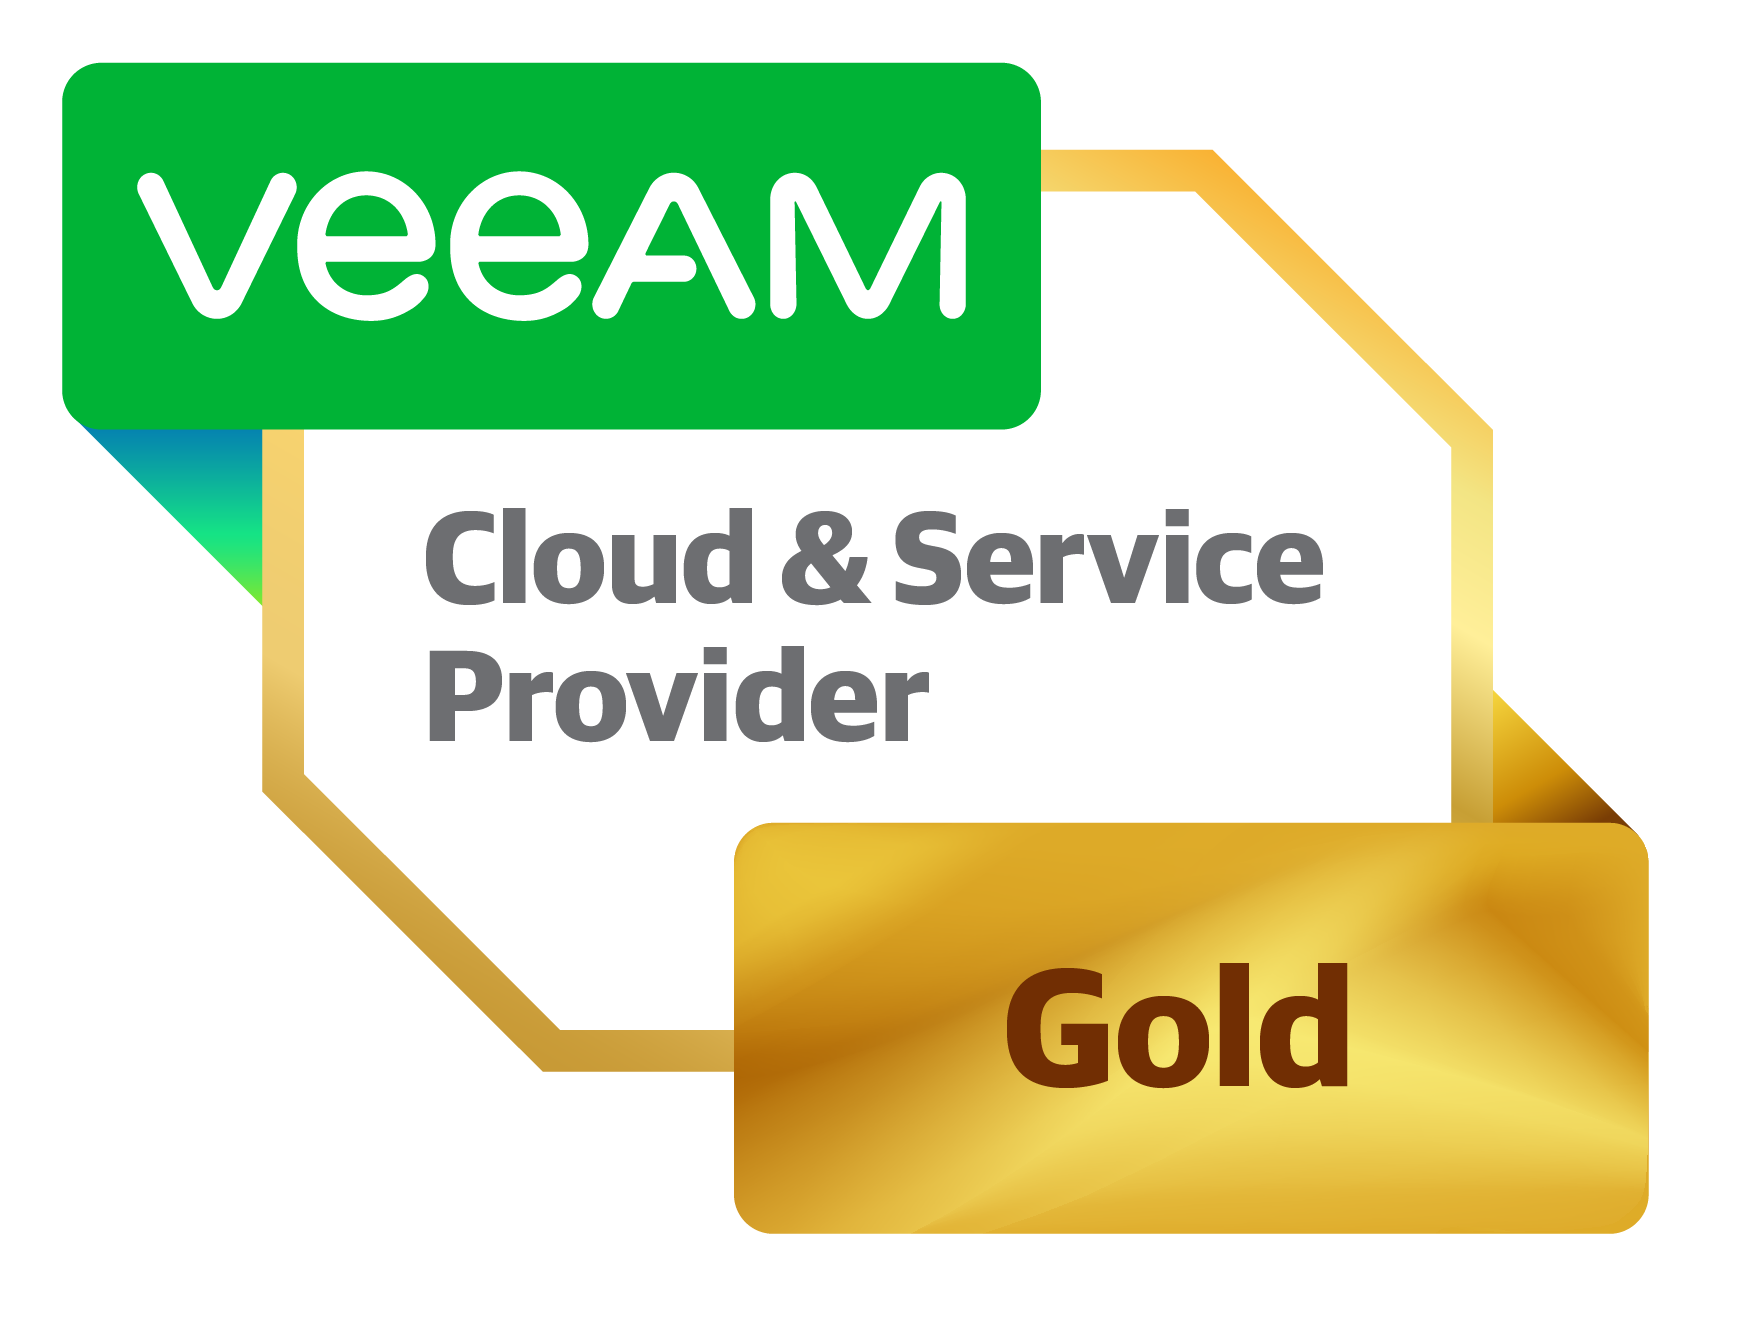 Veeam Gold Partner